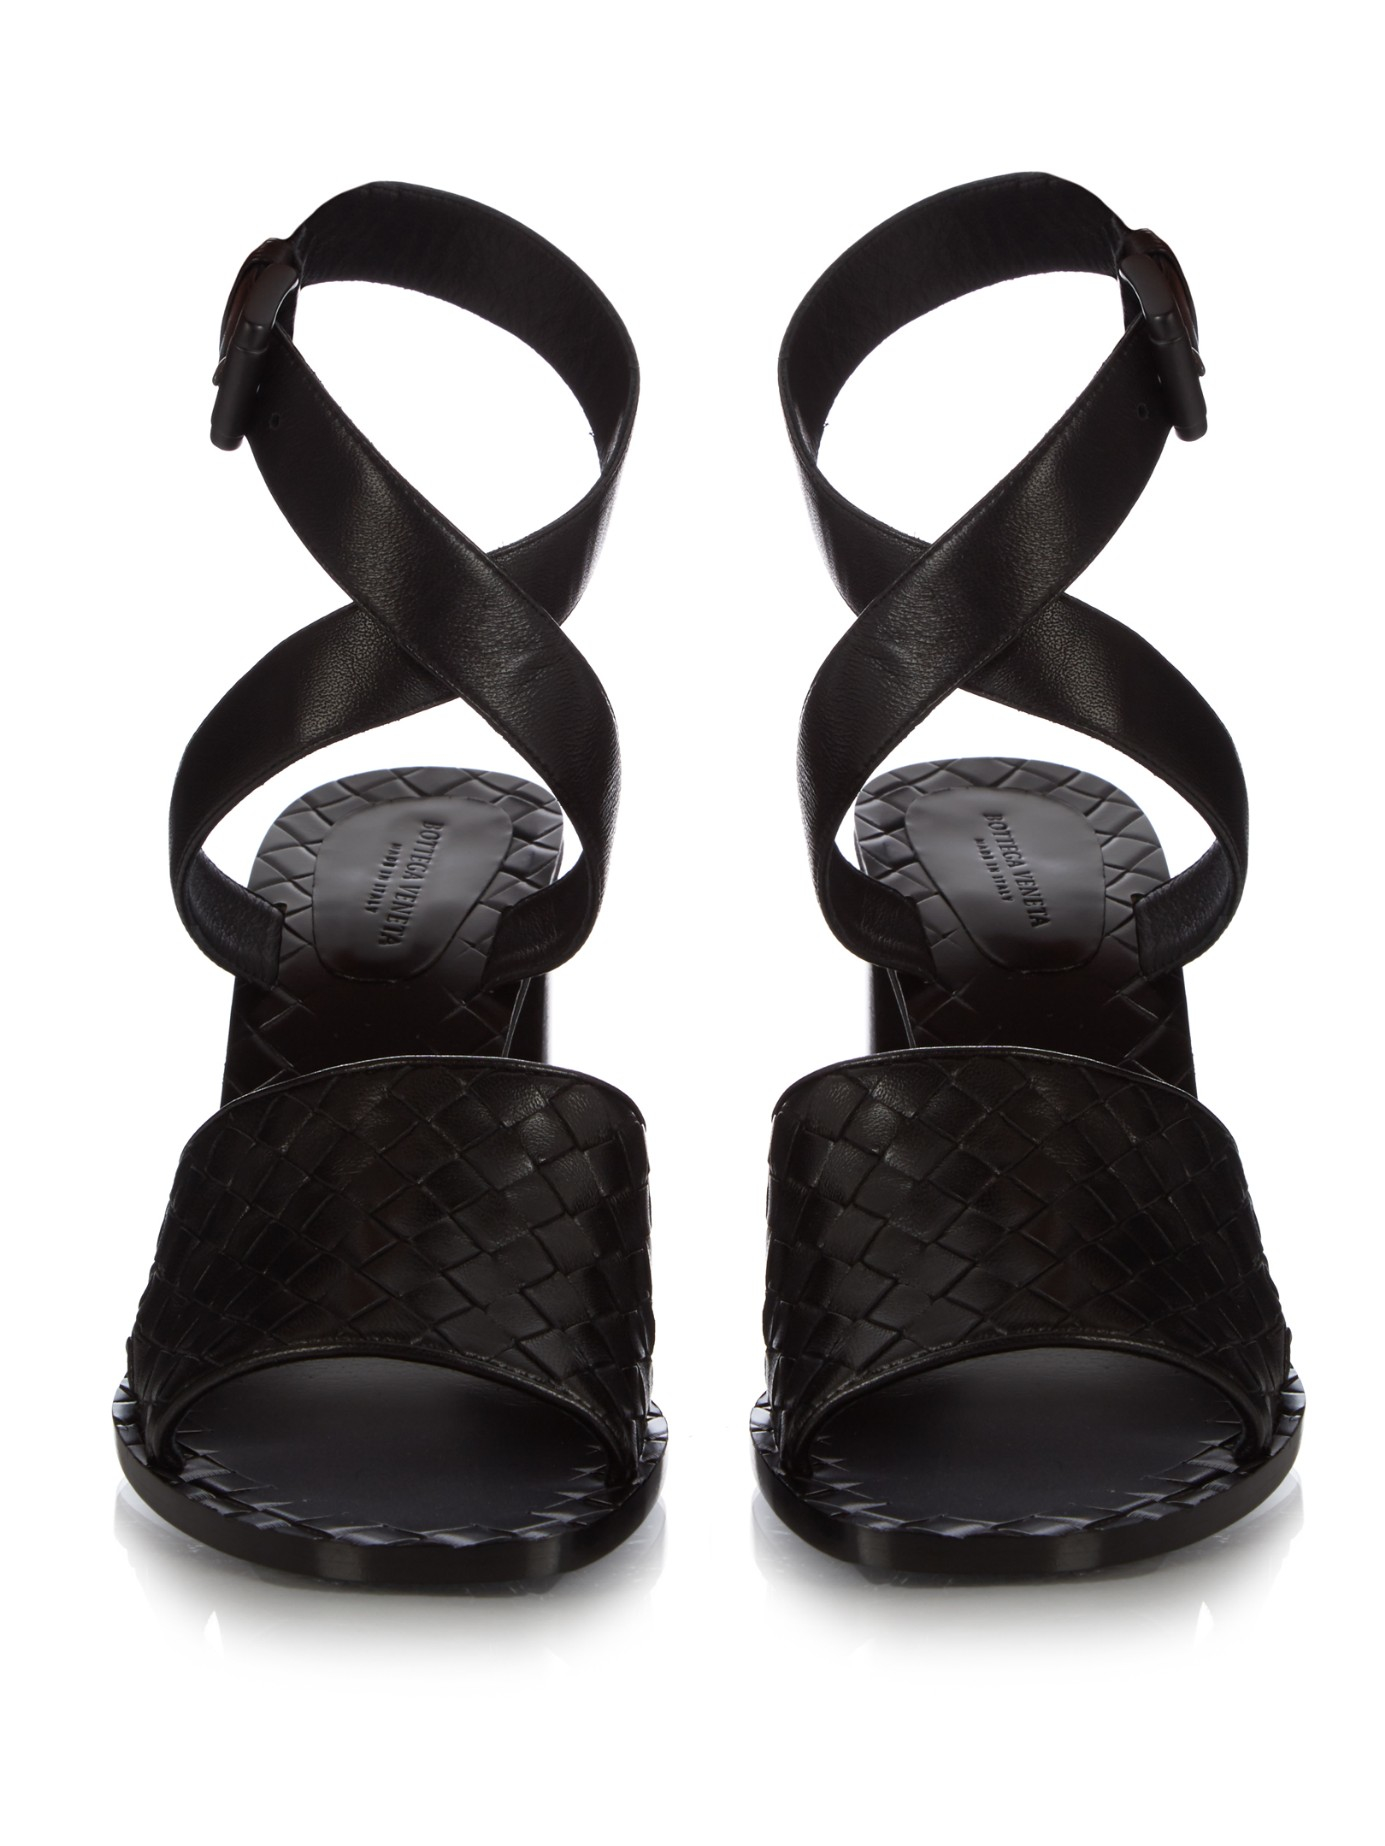 Bottega veneta Intrecciato Block-heel Leather Sandals in Black | Lyst